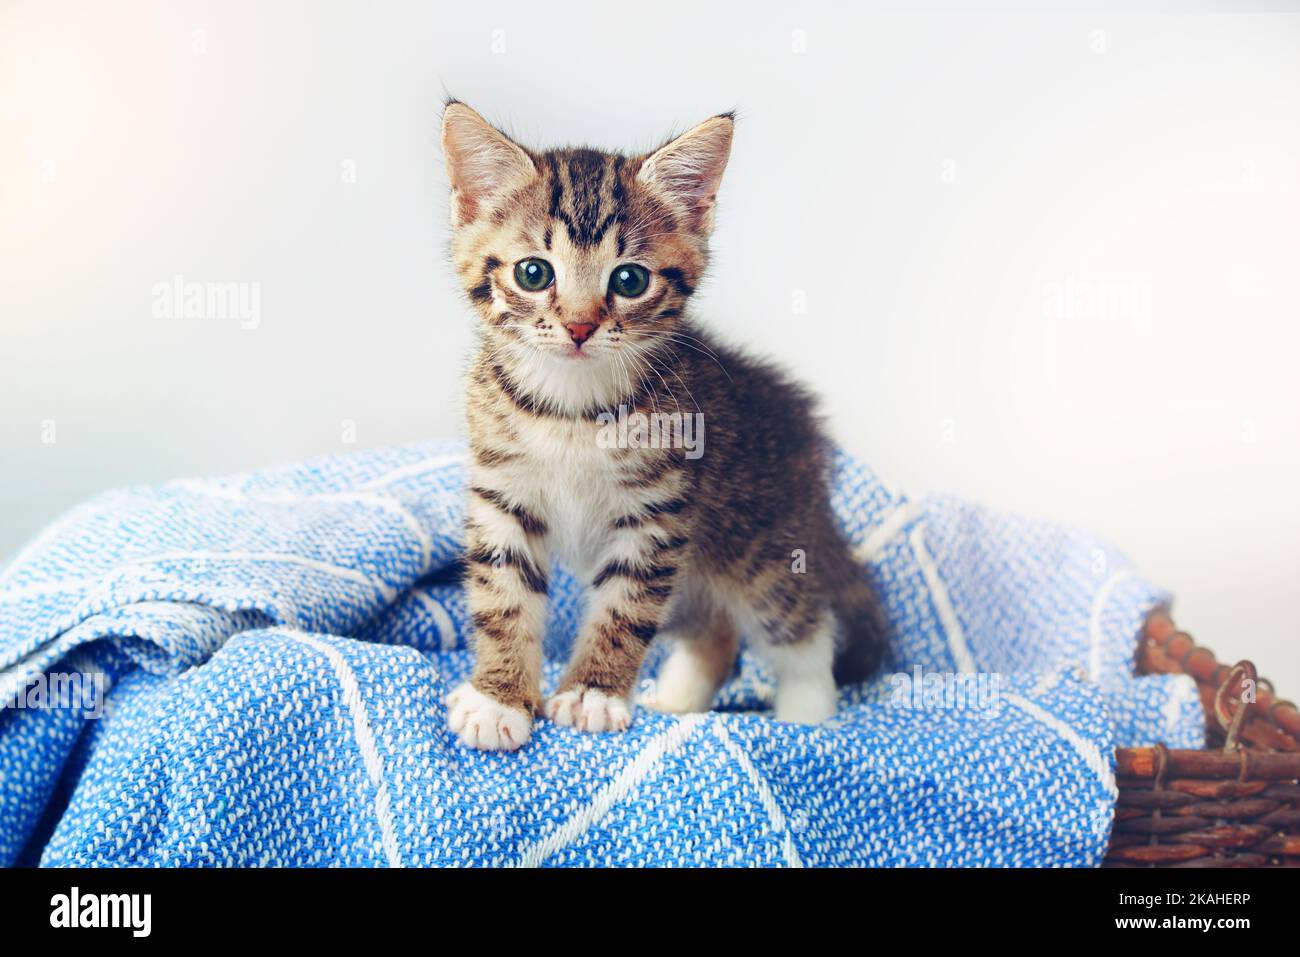 Tutte le zampe giù, im il più cutest. Studio shot di un adorabile gattino da tabby seduto su una morbida coperta in un cesto. Foto Stock